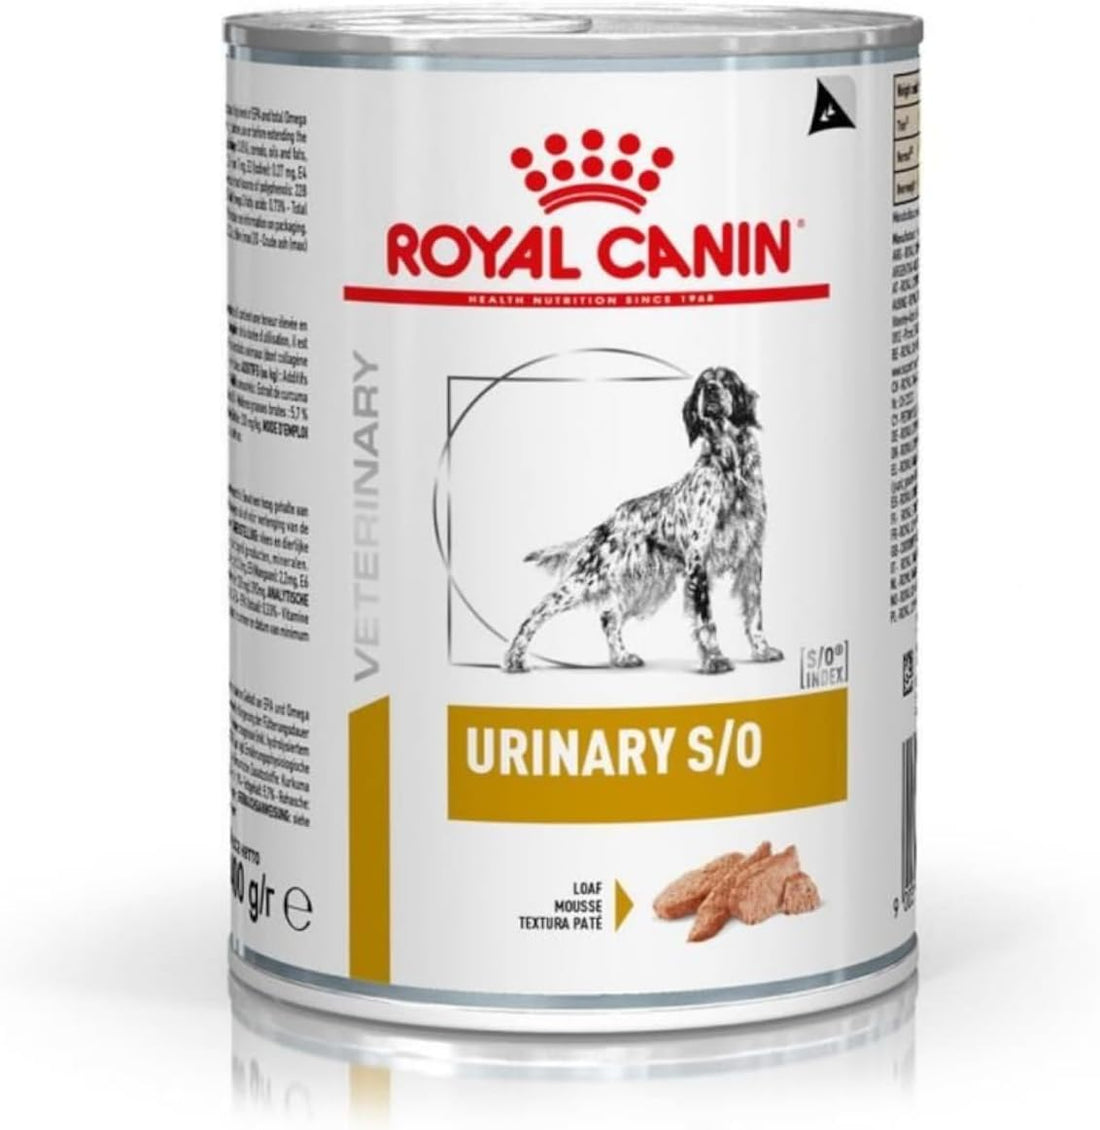 Royal Canin, busta di mangime Urinary S/O 410G